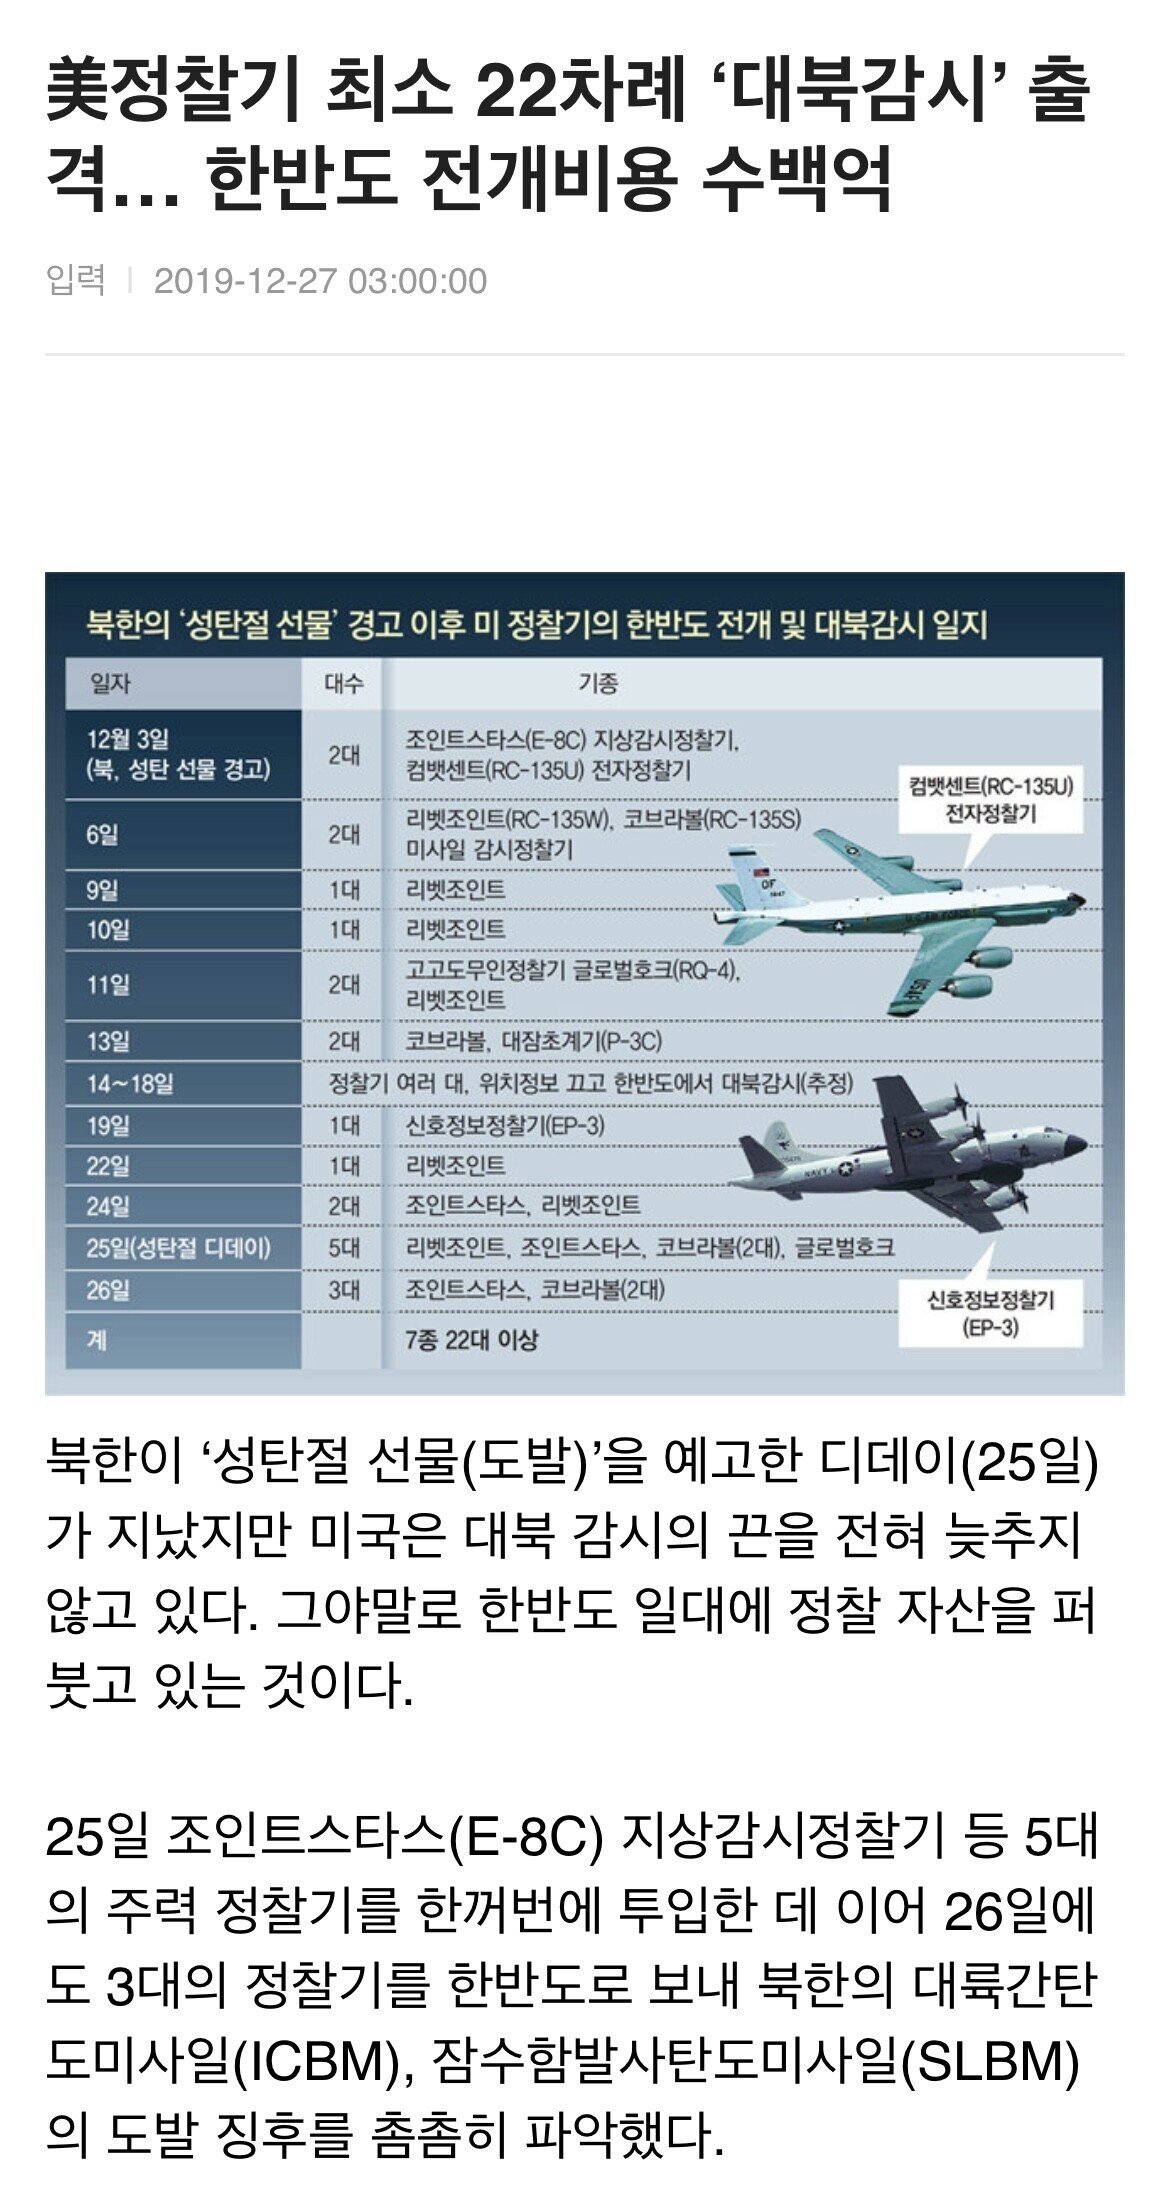 金のために在韓米軍を撤収しなければならないという主張があきれる。